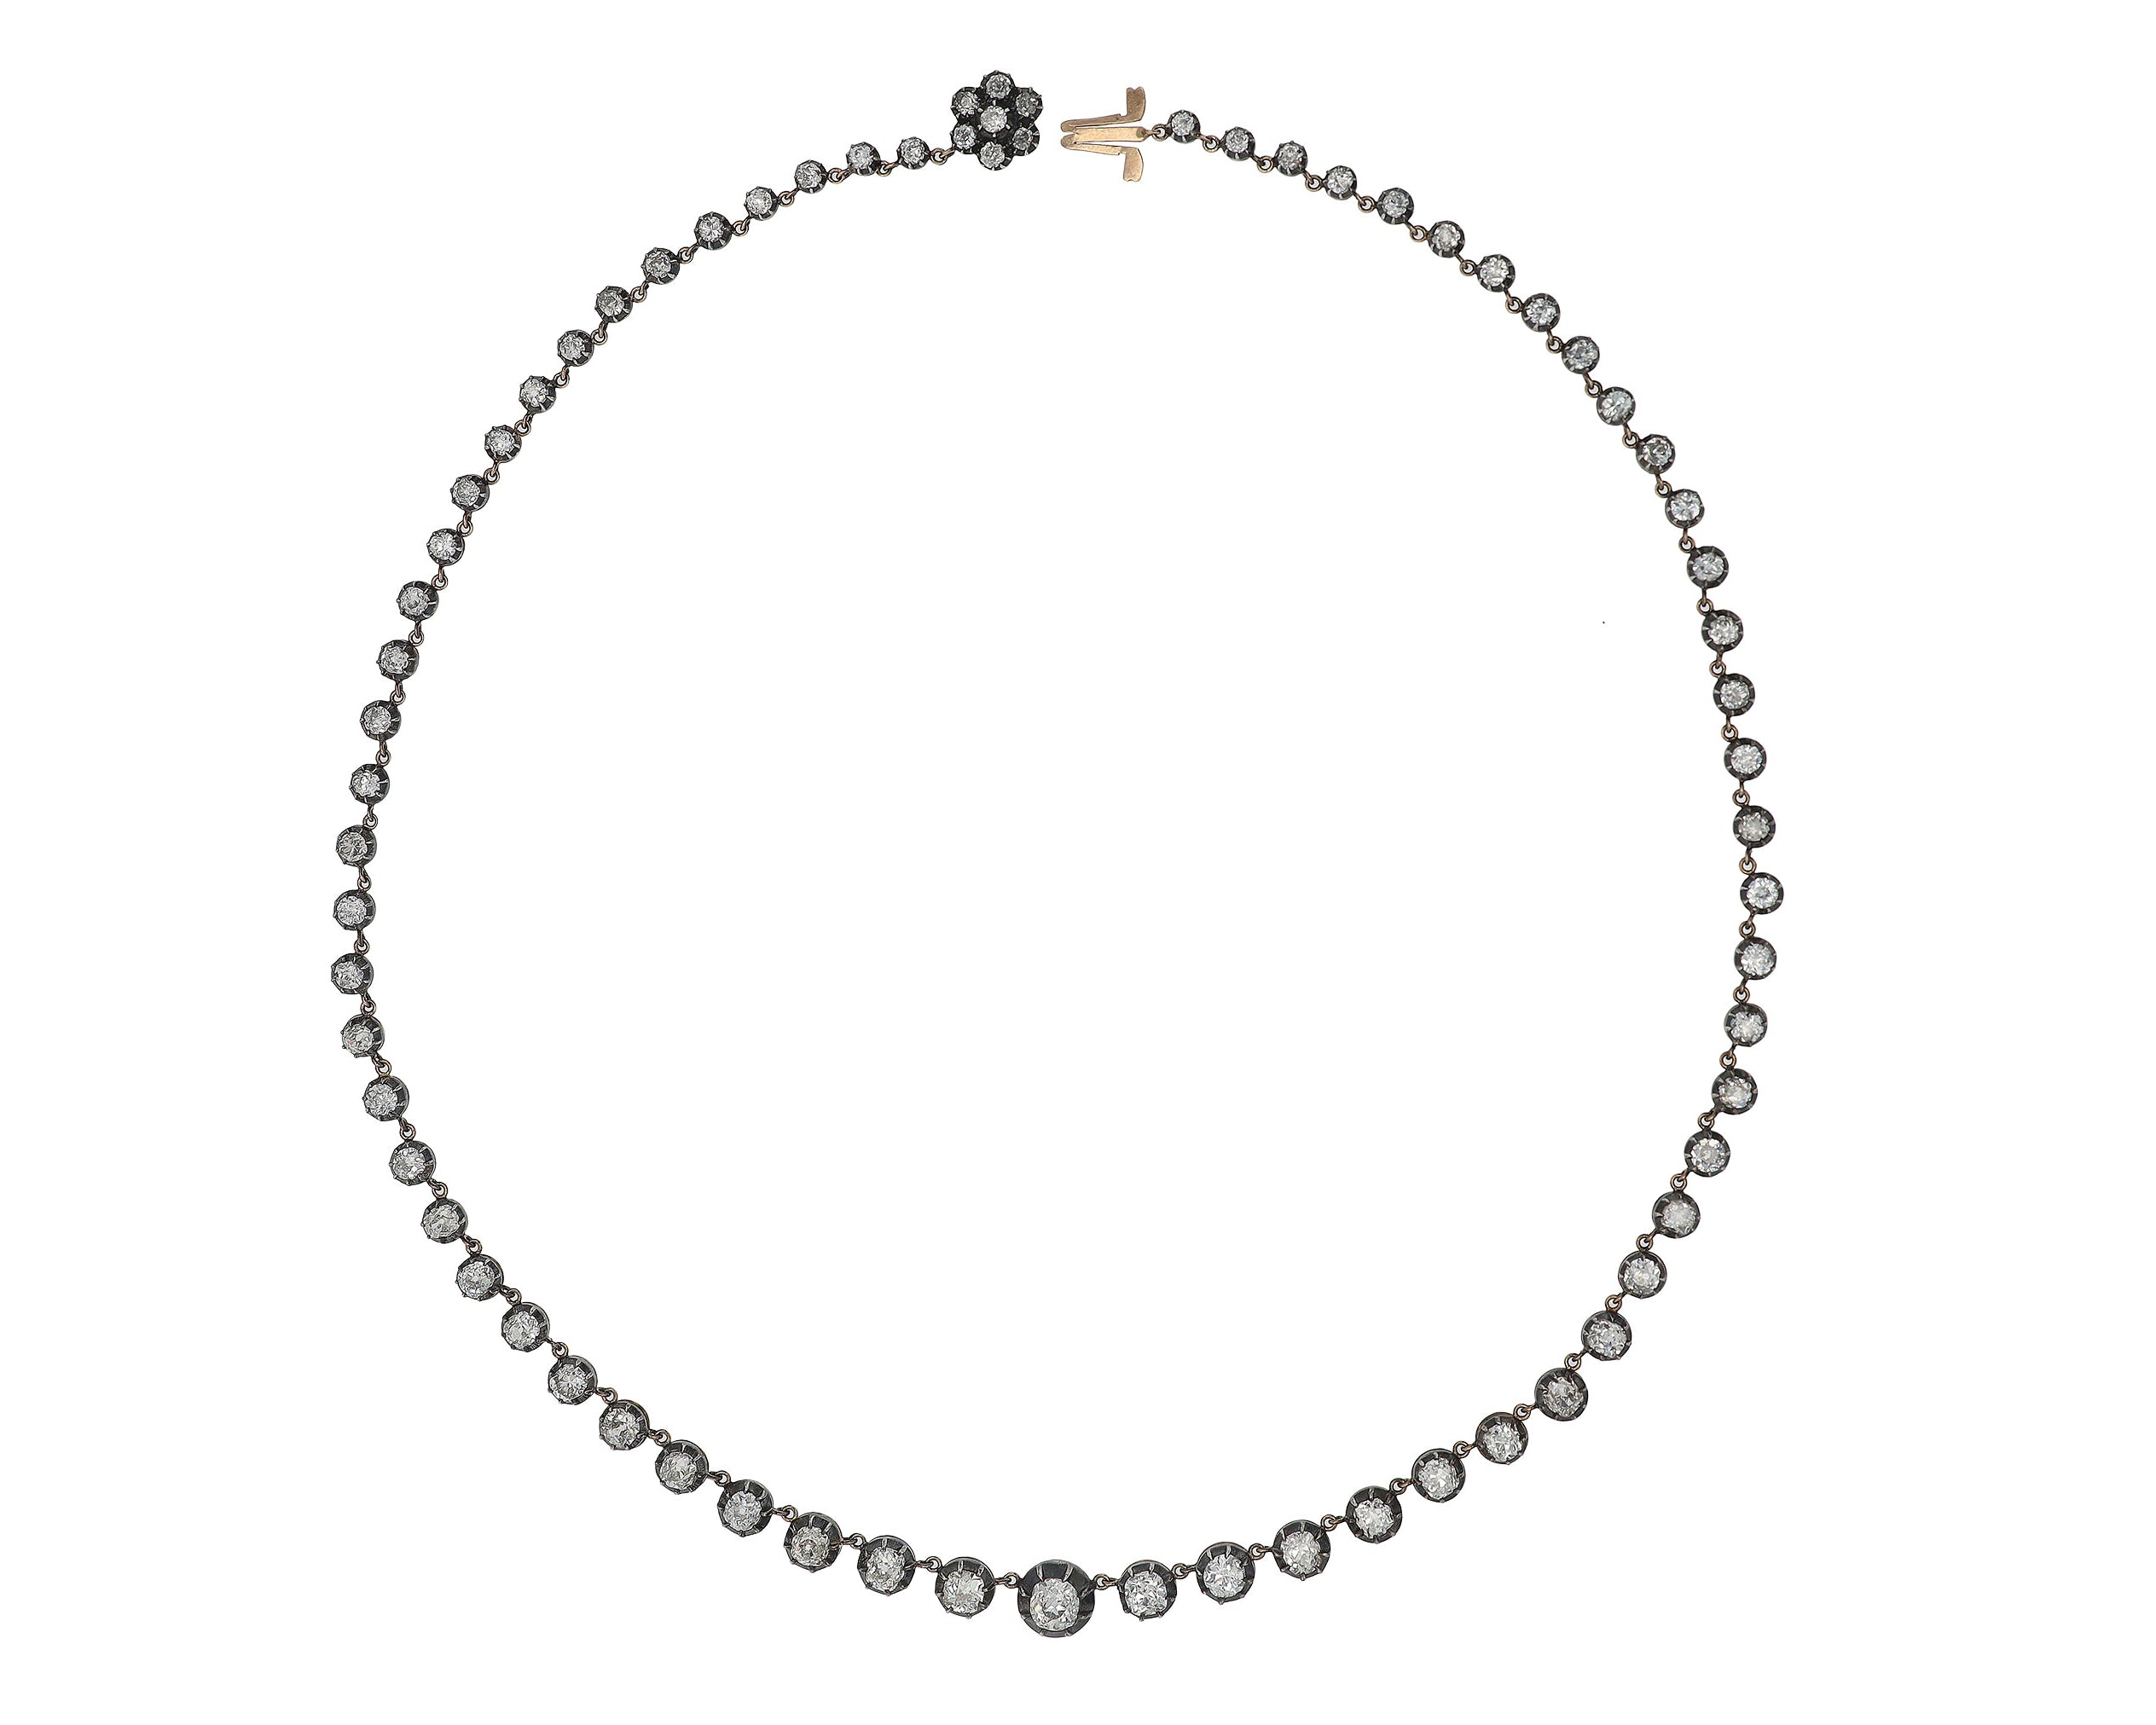 16 Carat Diamond Necklace